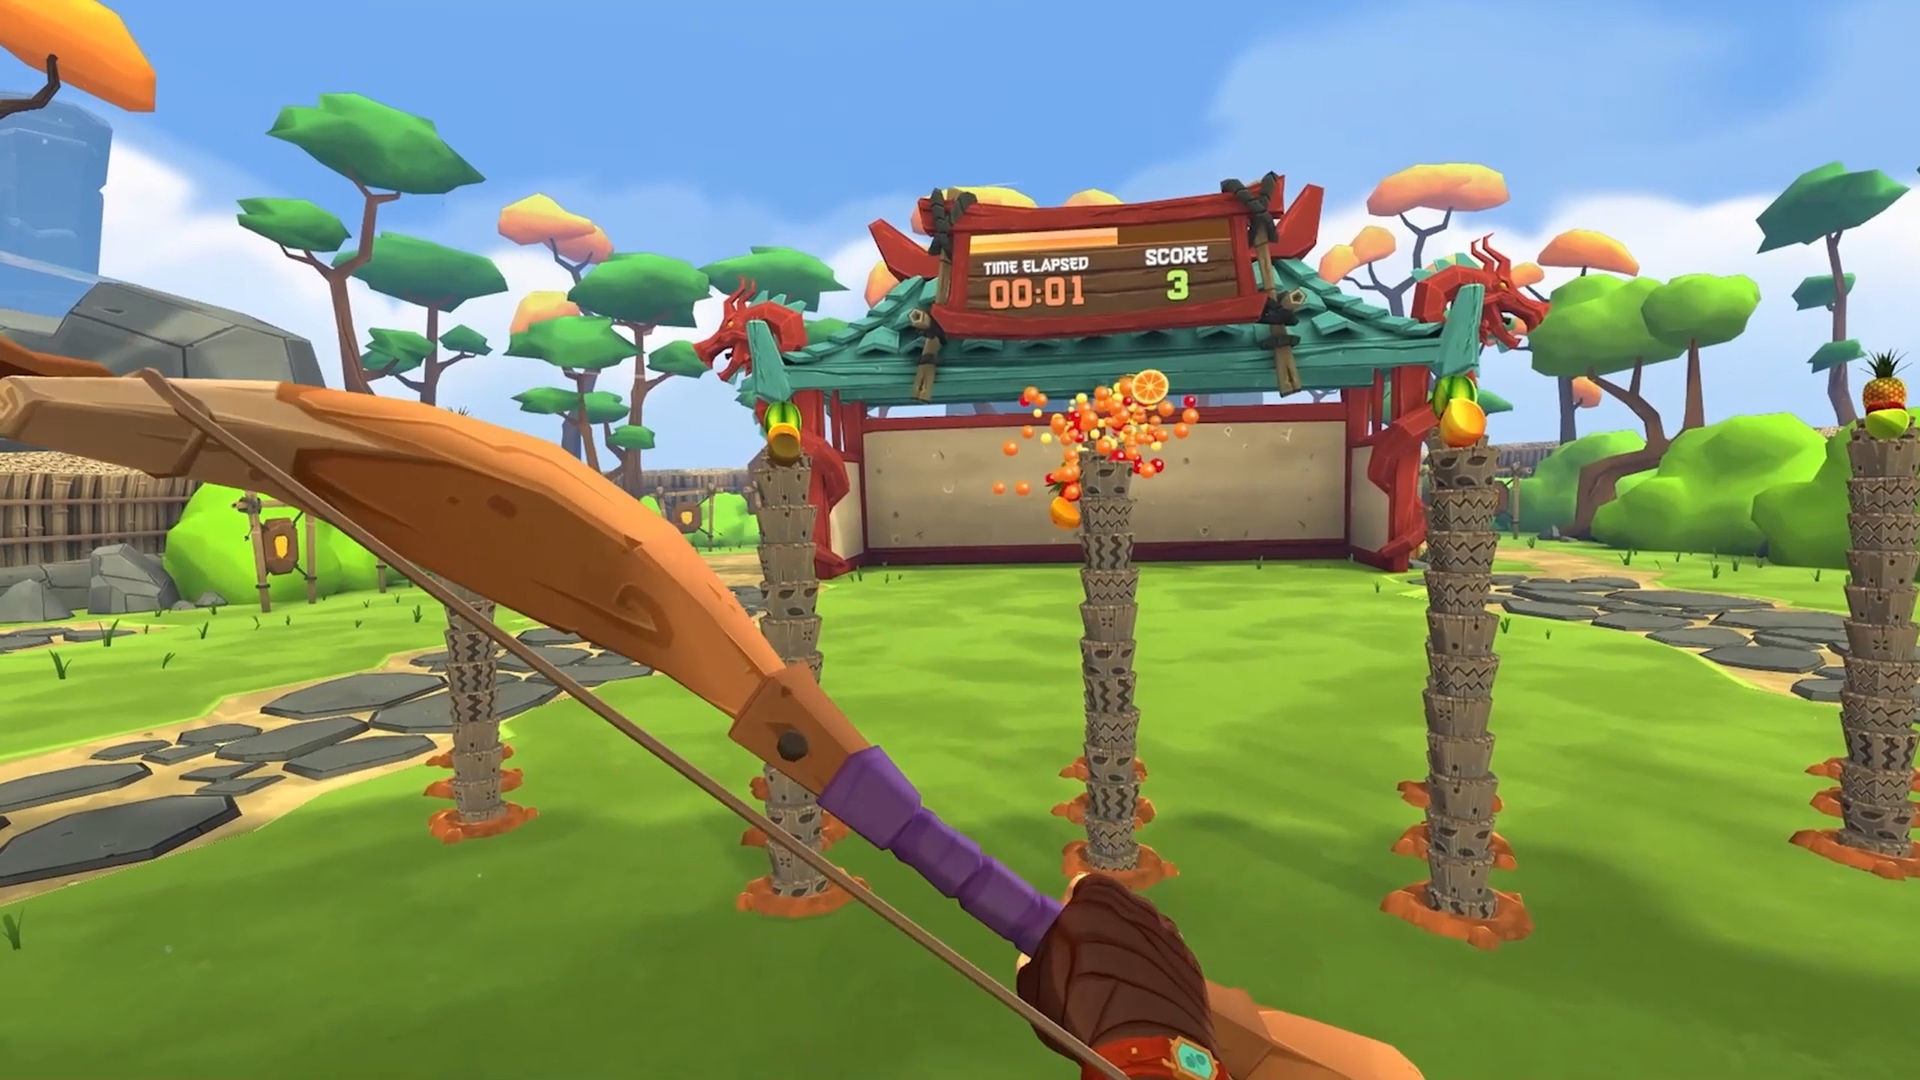 Fruit Ninja 2 on Meta Quest, Quest VR Games